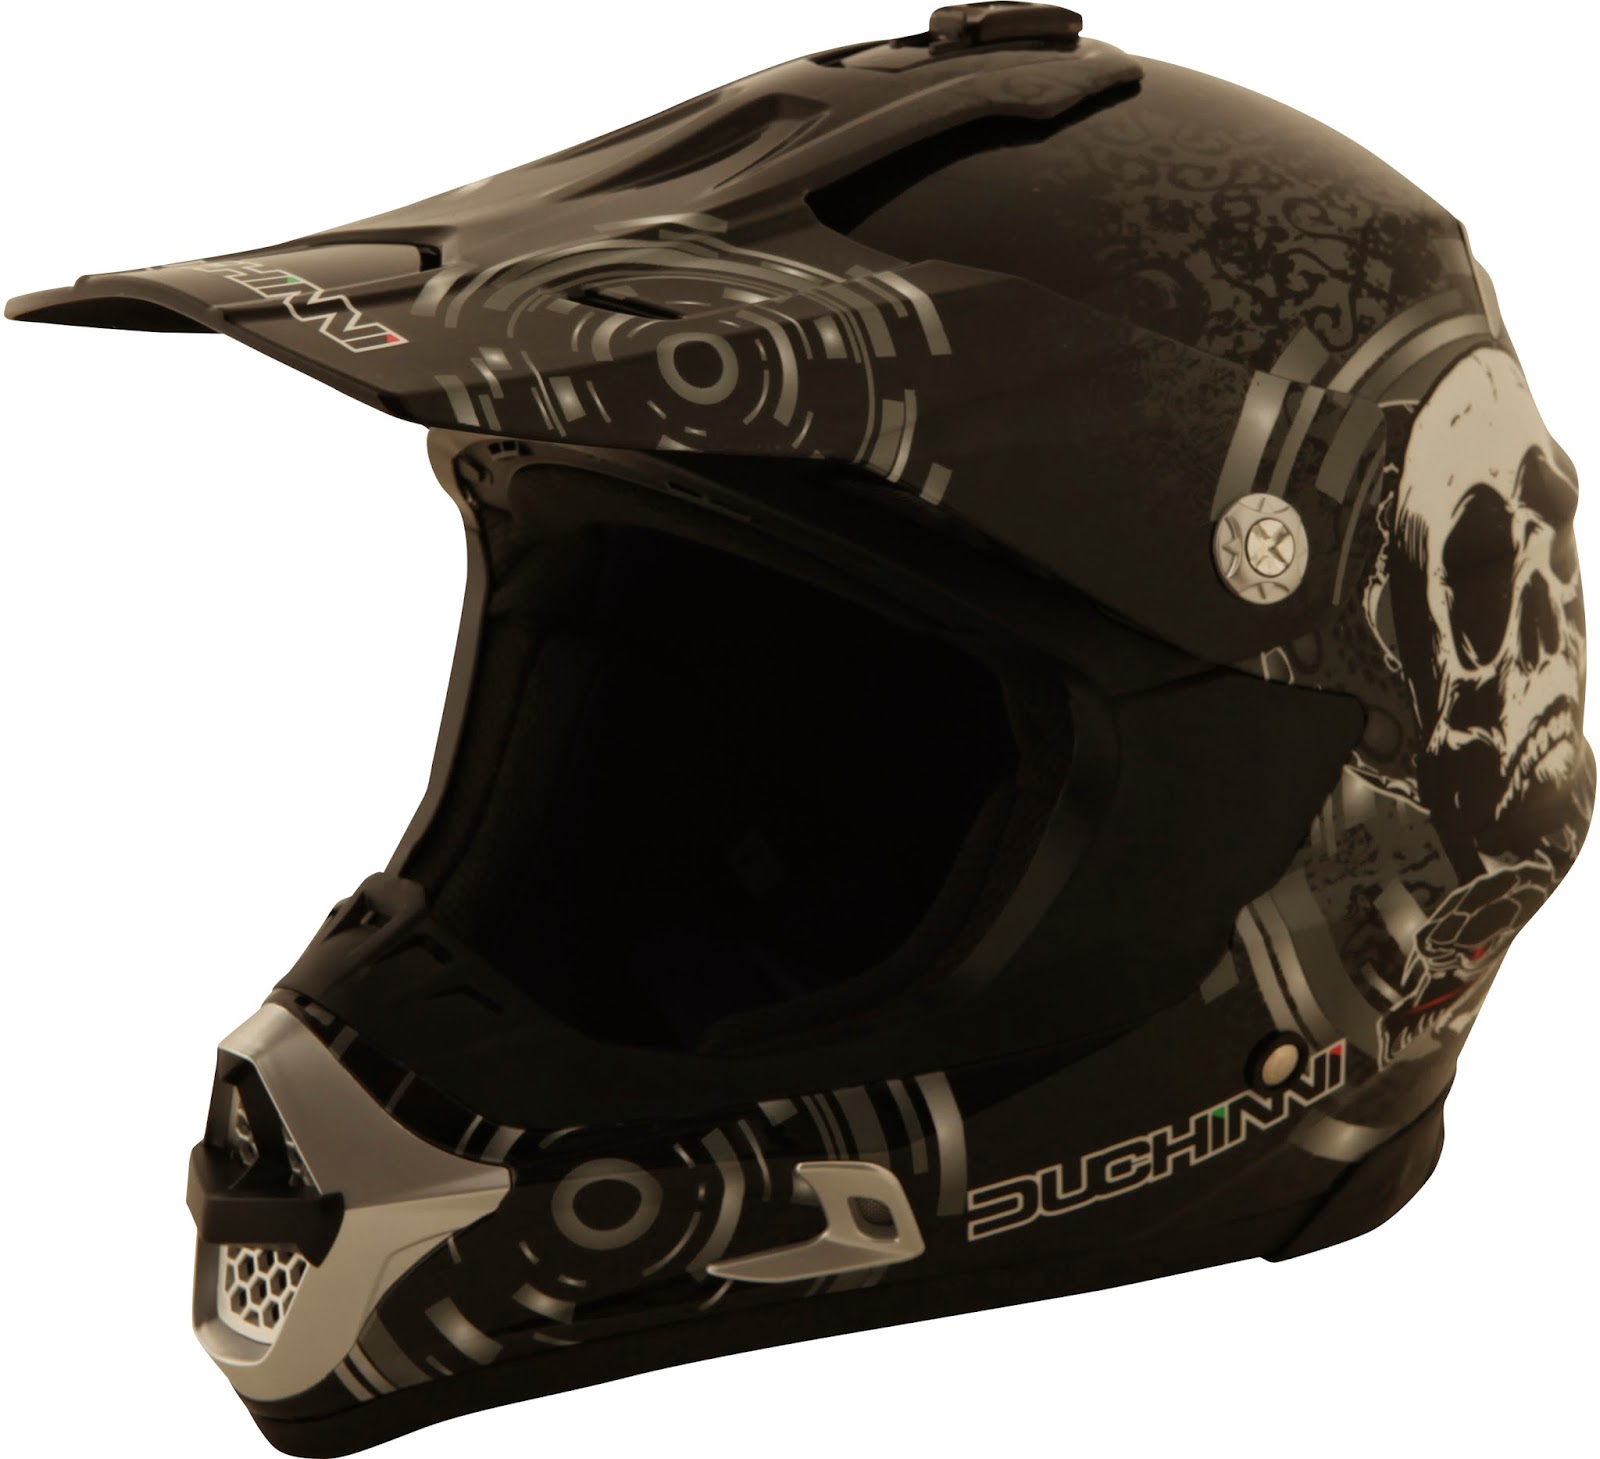 New: Duchinni D305 Moto X helmet